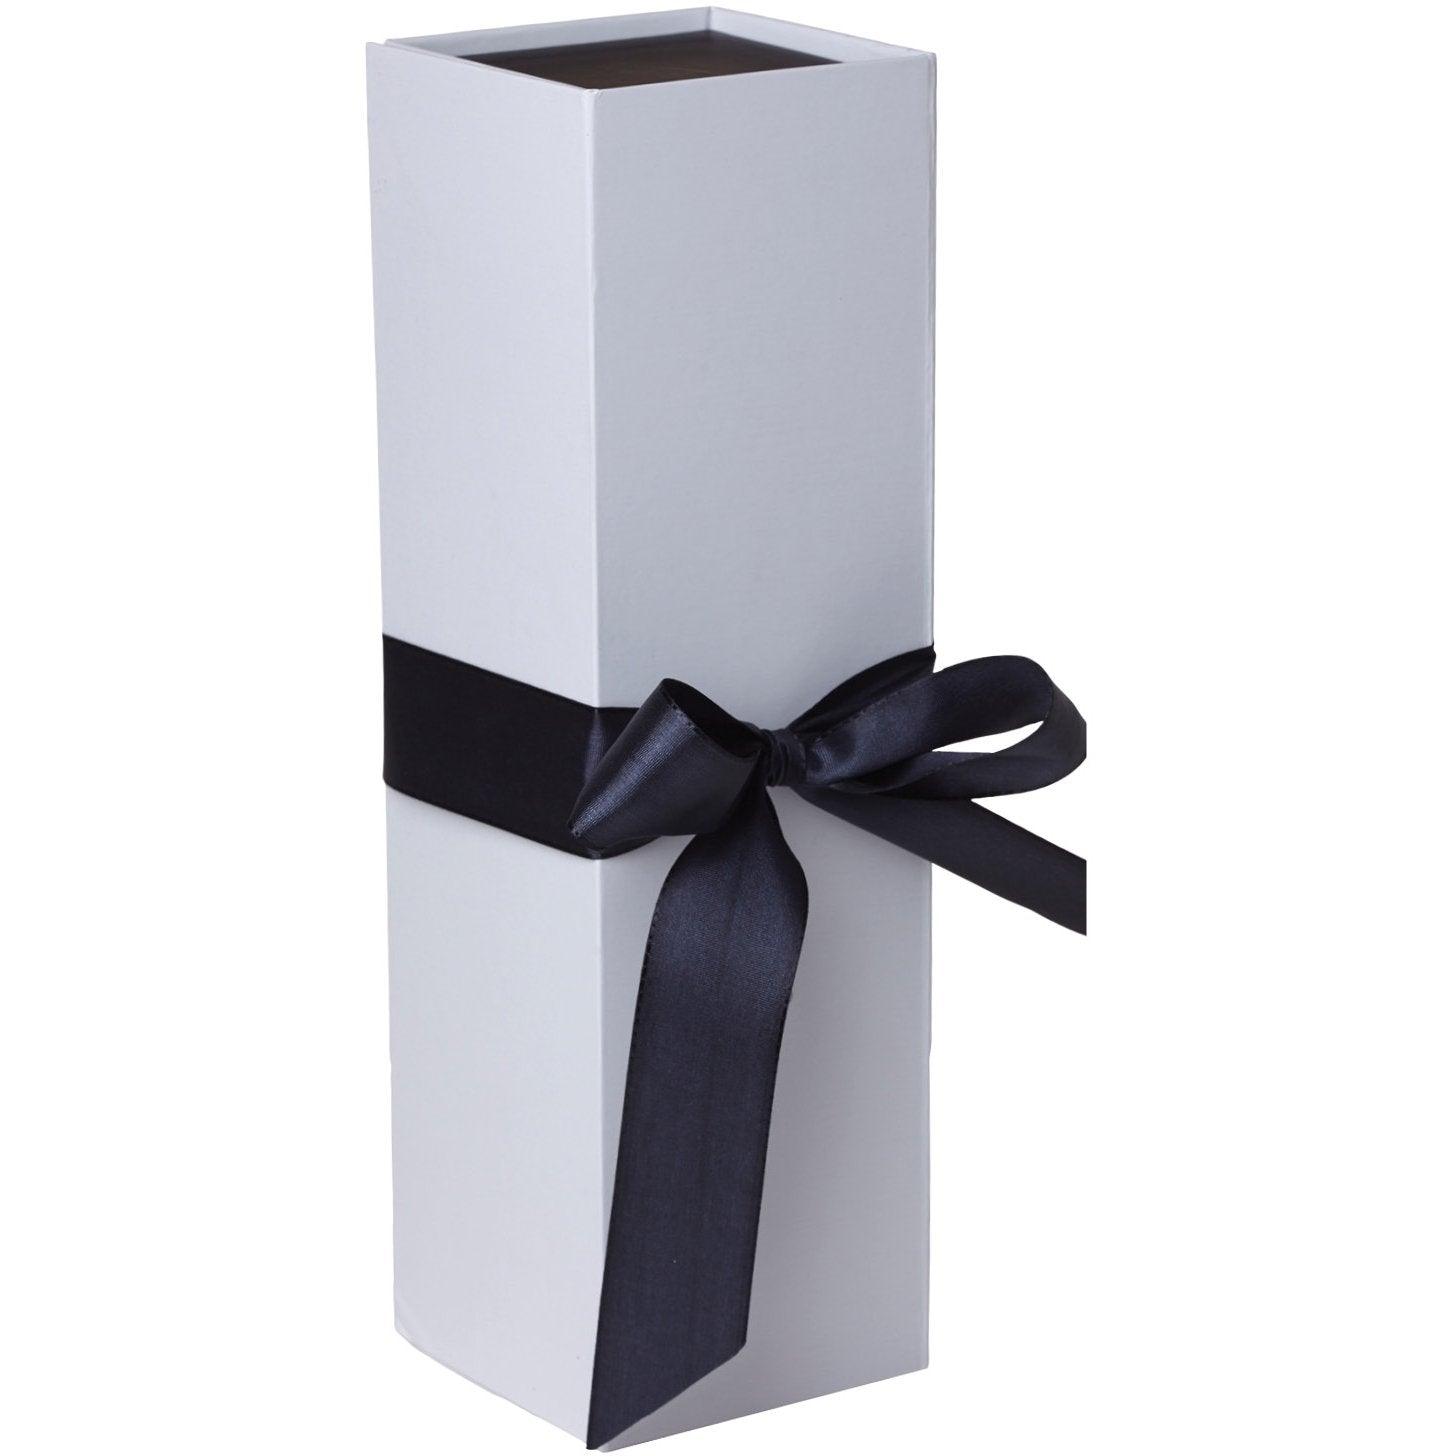 Jillson & Roberts Bottle Gift Box with Ribbon Tie, Sophisticate White Matte (12 Pcs) by Present Paper - Vysn